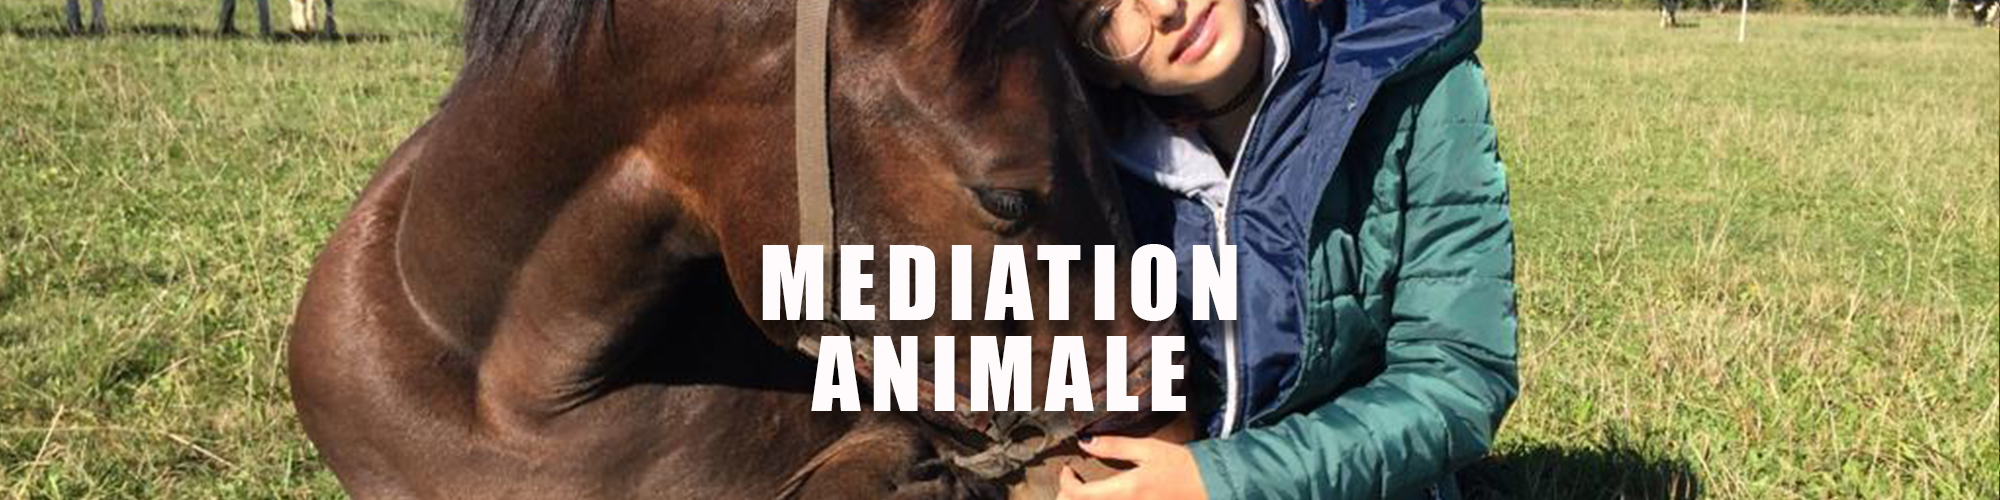 C mediation animale huskiesport neuchatel